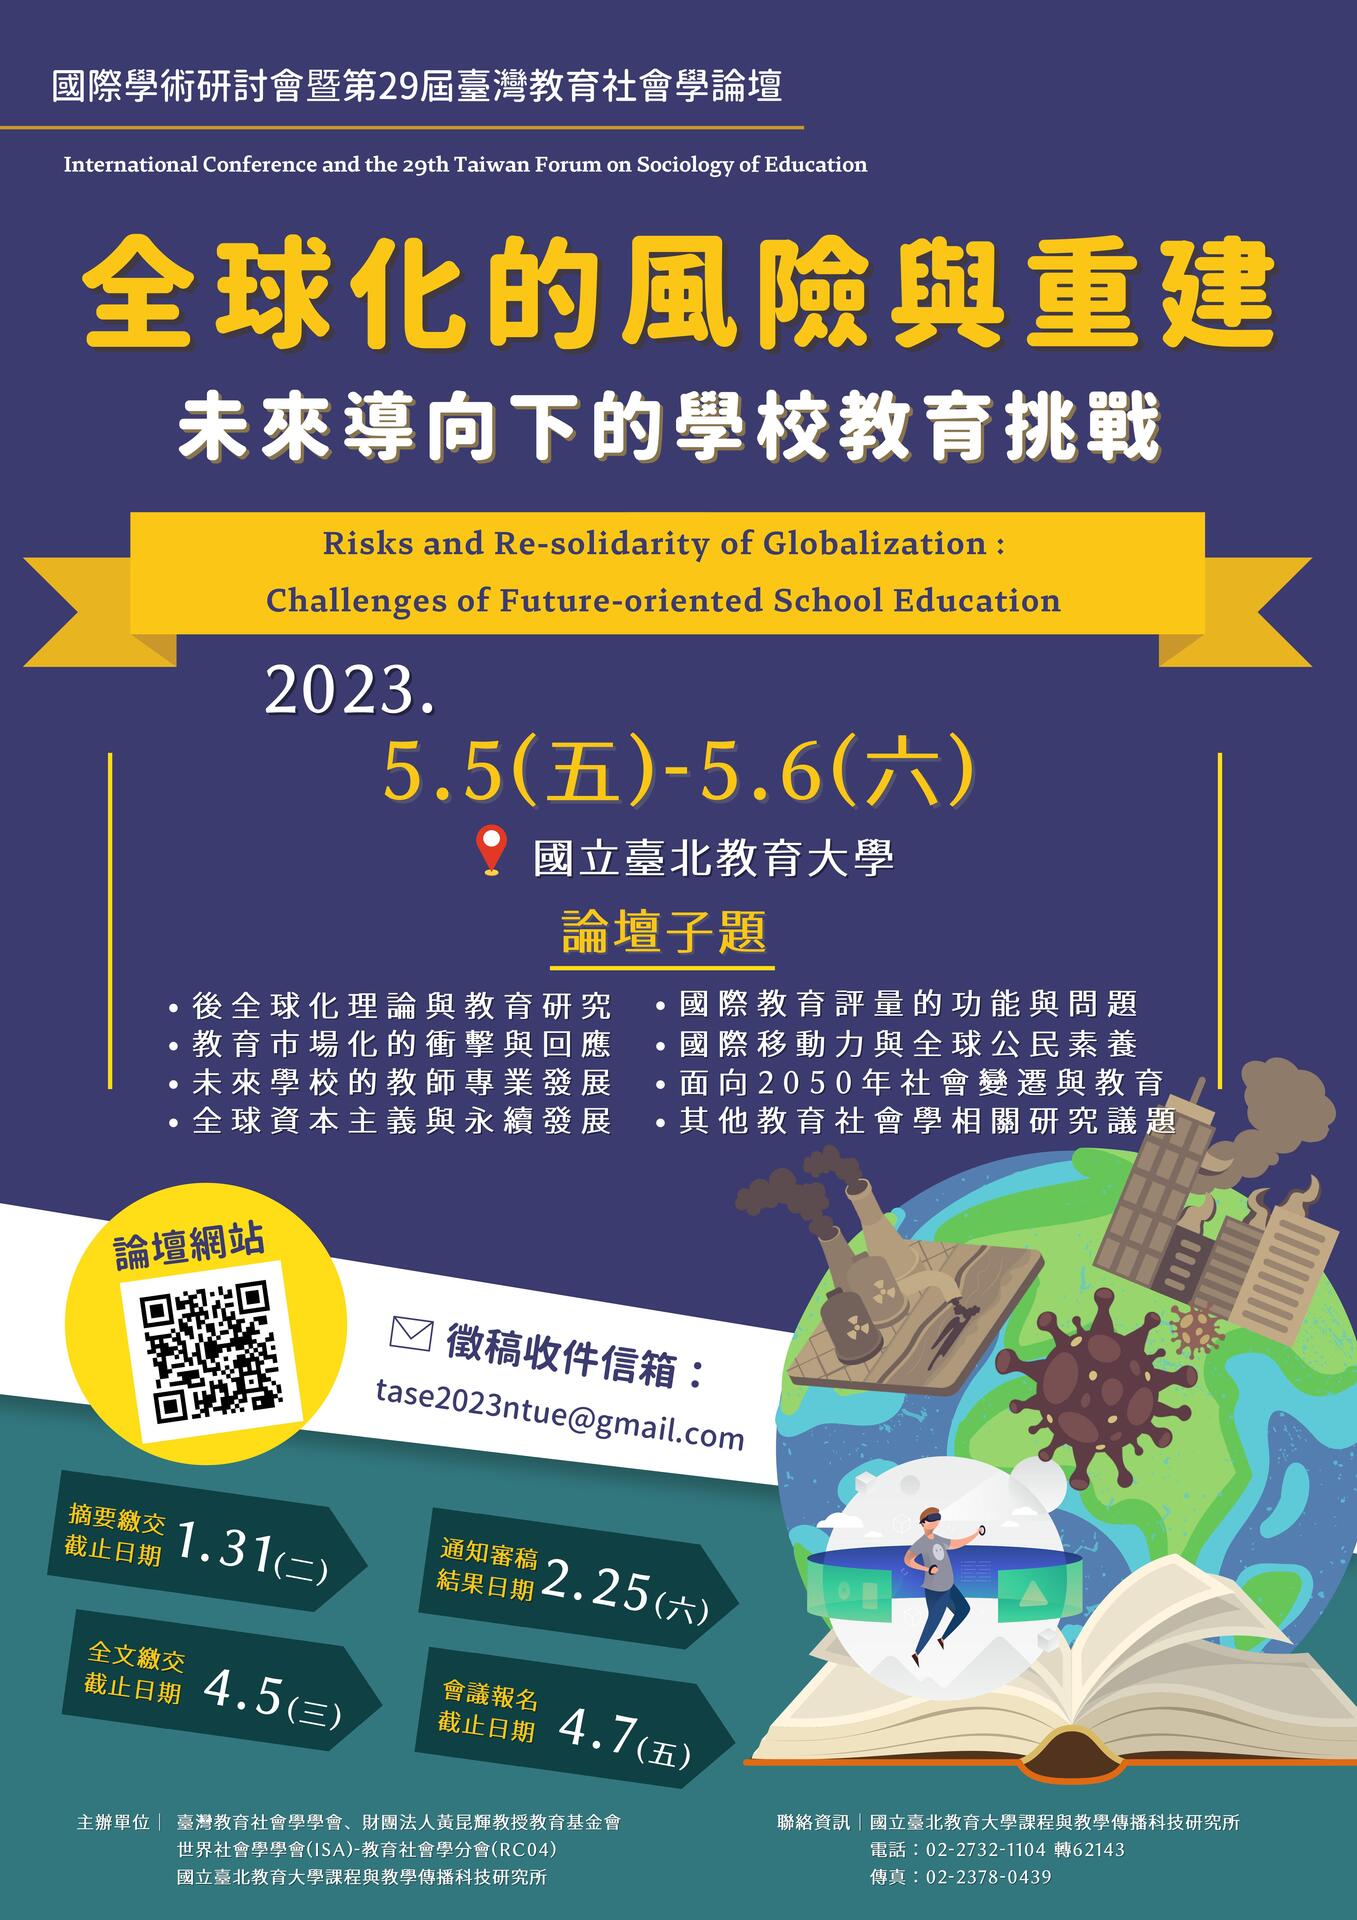 「全球化的風險與重建：未來導向下的學校教育挑戰」國際學術研討會暨第29屆臺灣教育社會學論壇